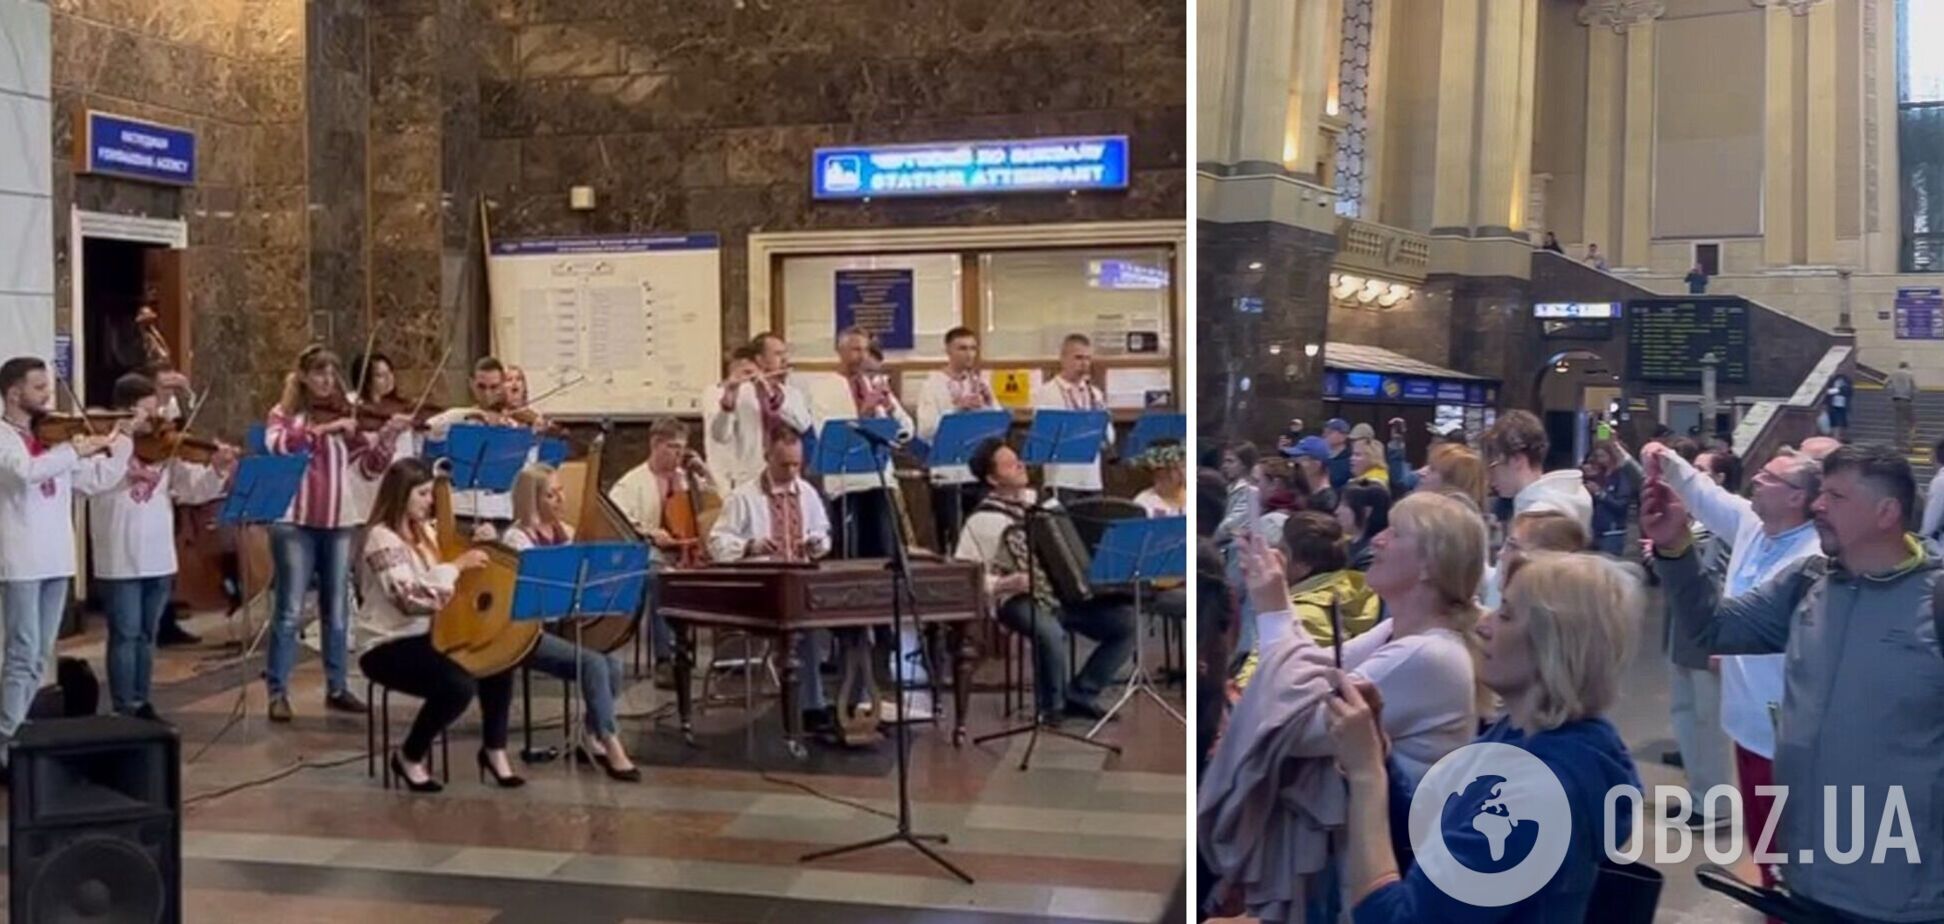 Оркестр грав у холі вокзалу